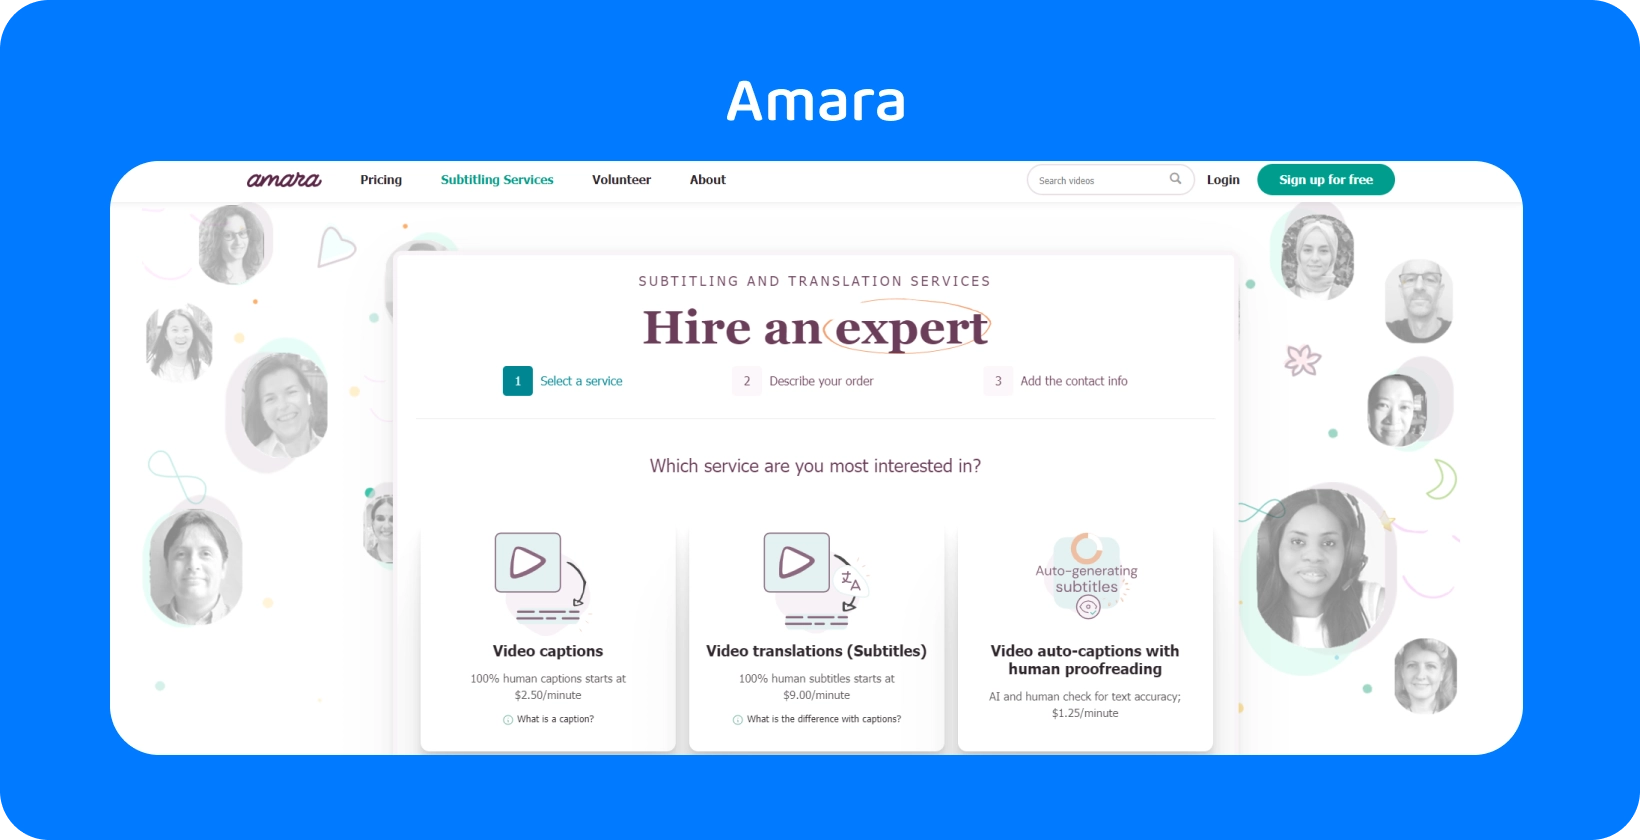 La pagina web di Amara mostra come aggiungere facilmente i sottotitoli ai video online, migliorando l'accessibilità degli spettatori.